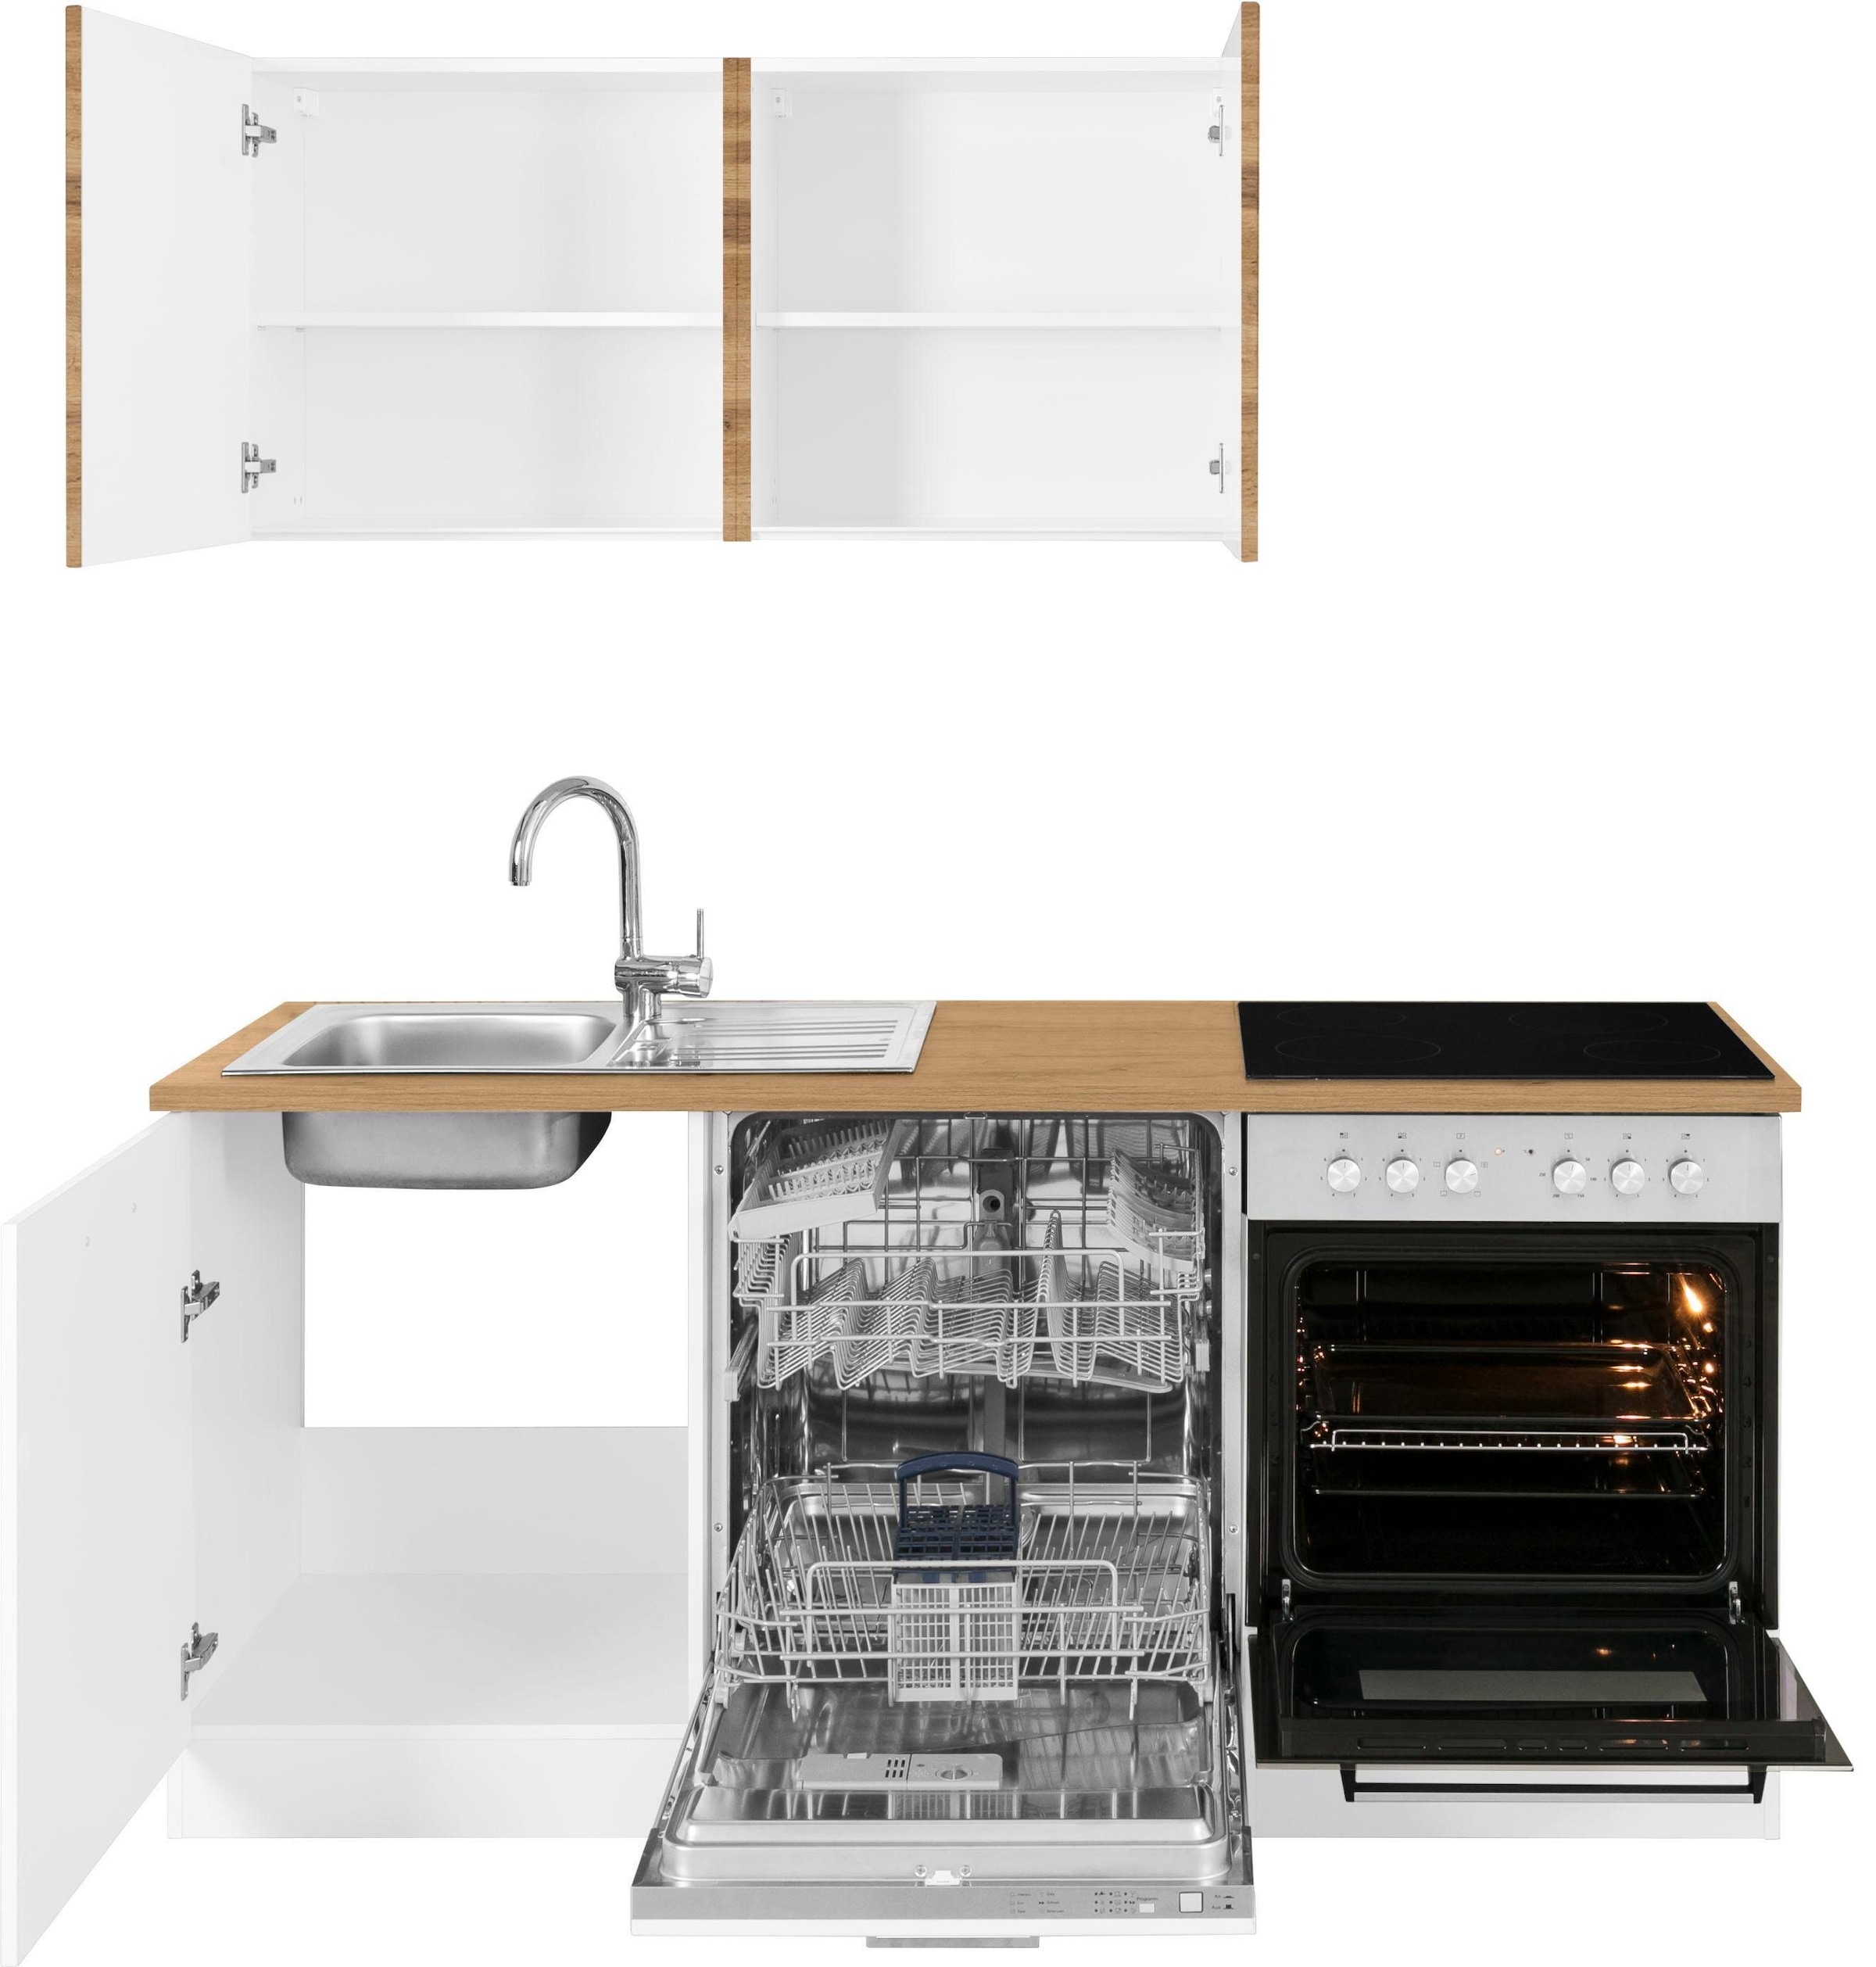 HELD MÖBEL Küchenzeile »Kehl«, ohne E-Geräte, Breite 180 cm, für Geschirrspülmaschine